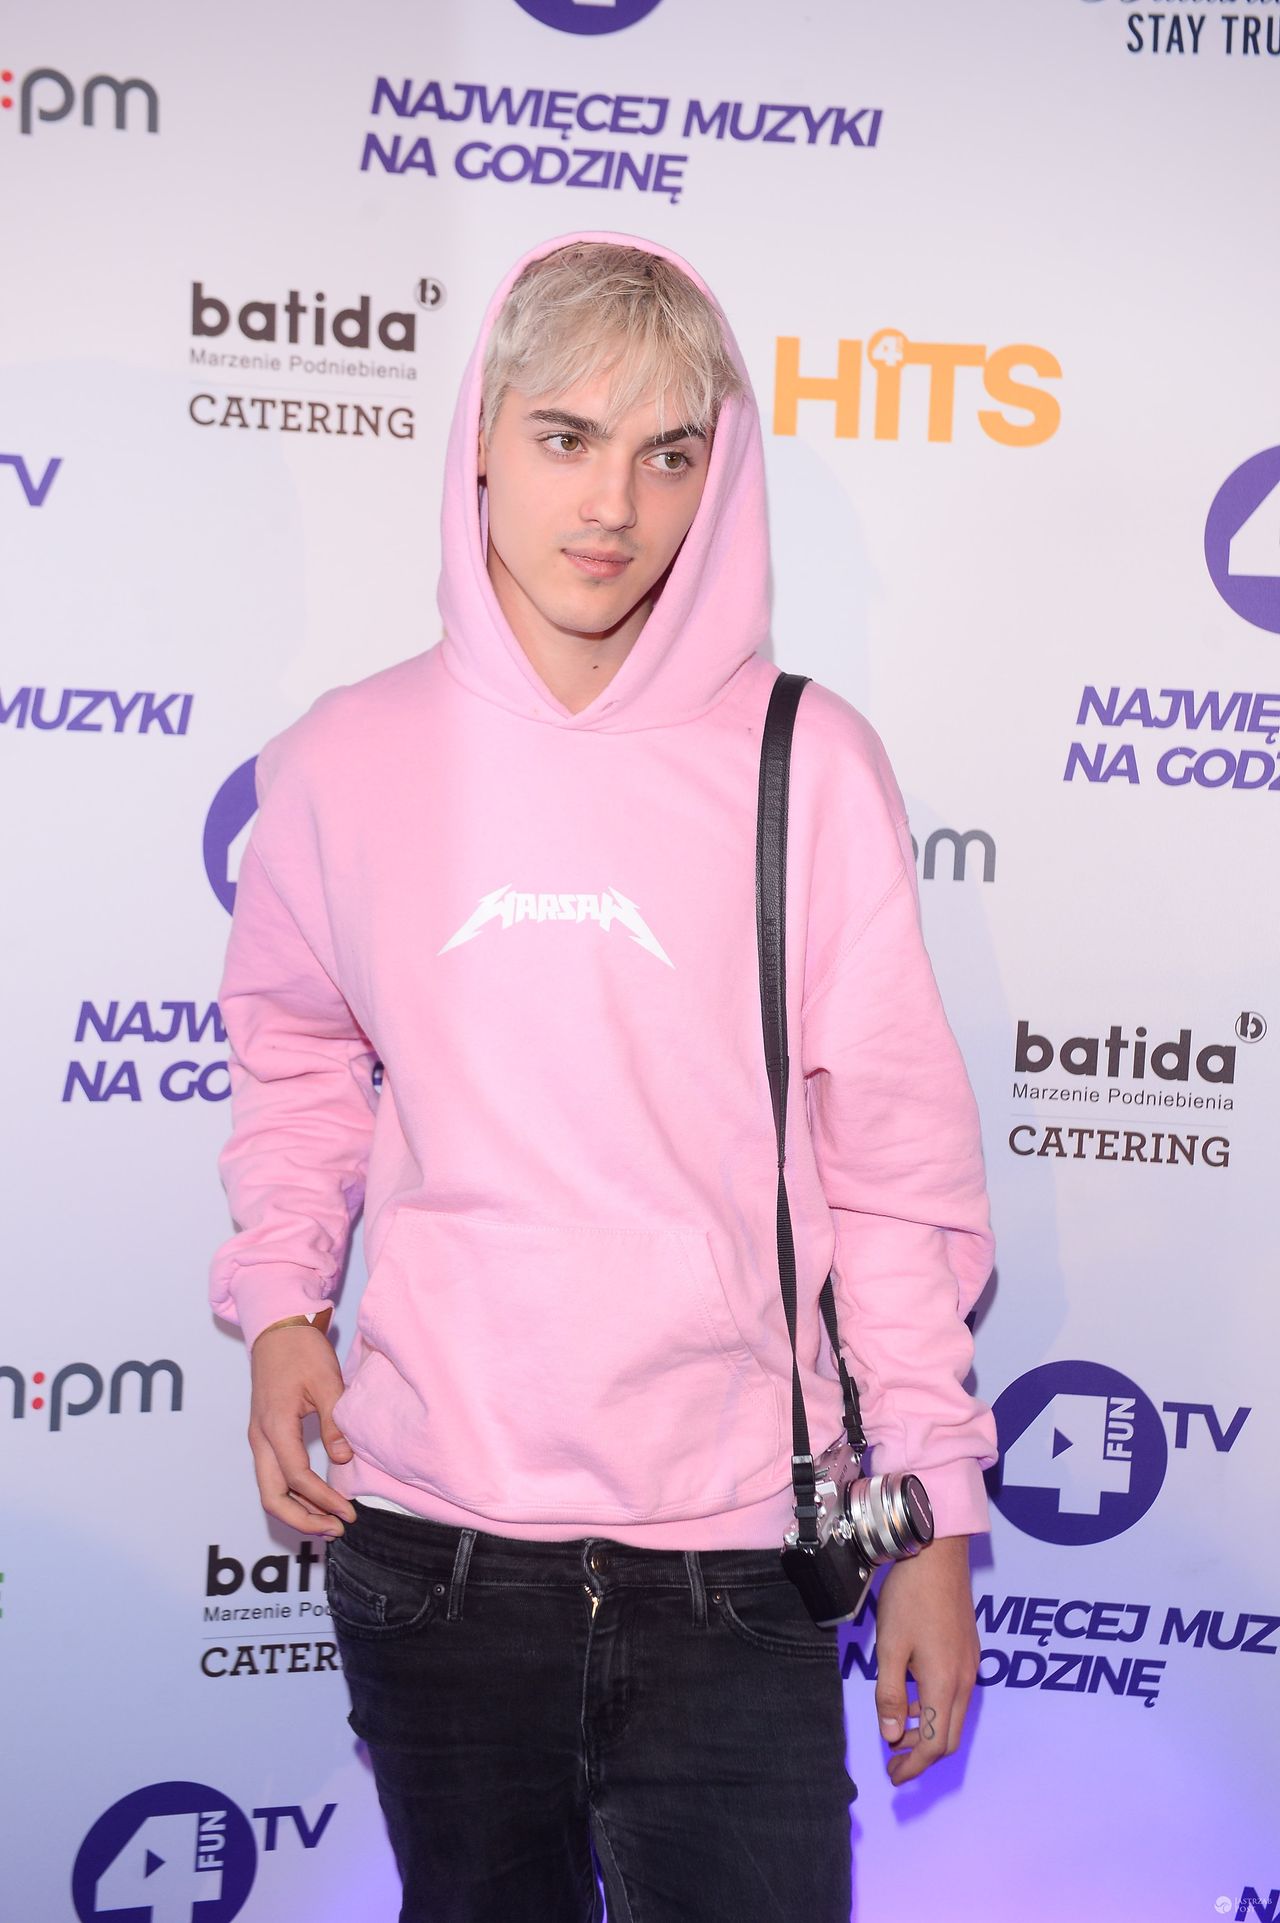 Radek Pestka w różowej bluzie na imprezie stacji muzycznej